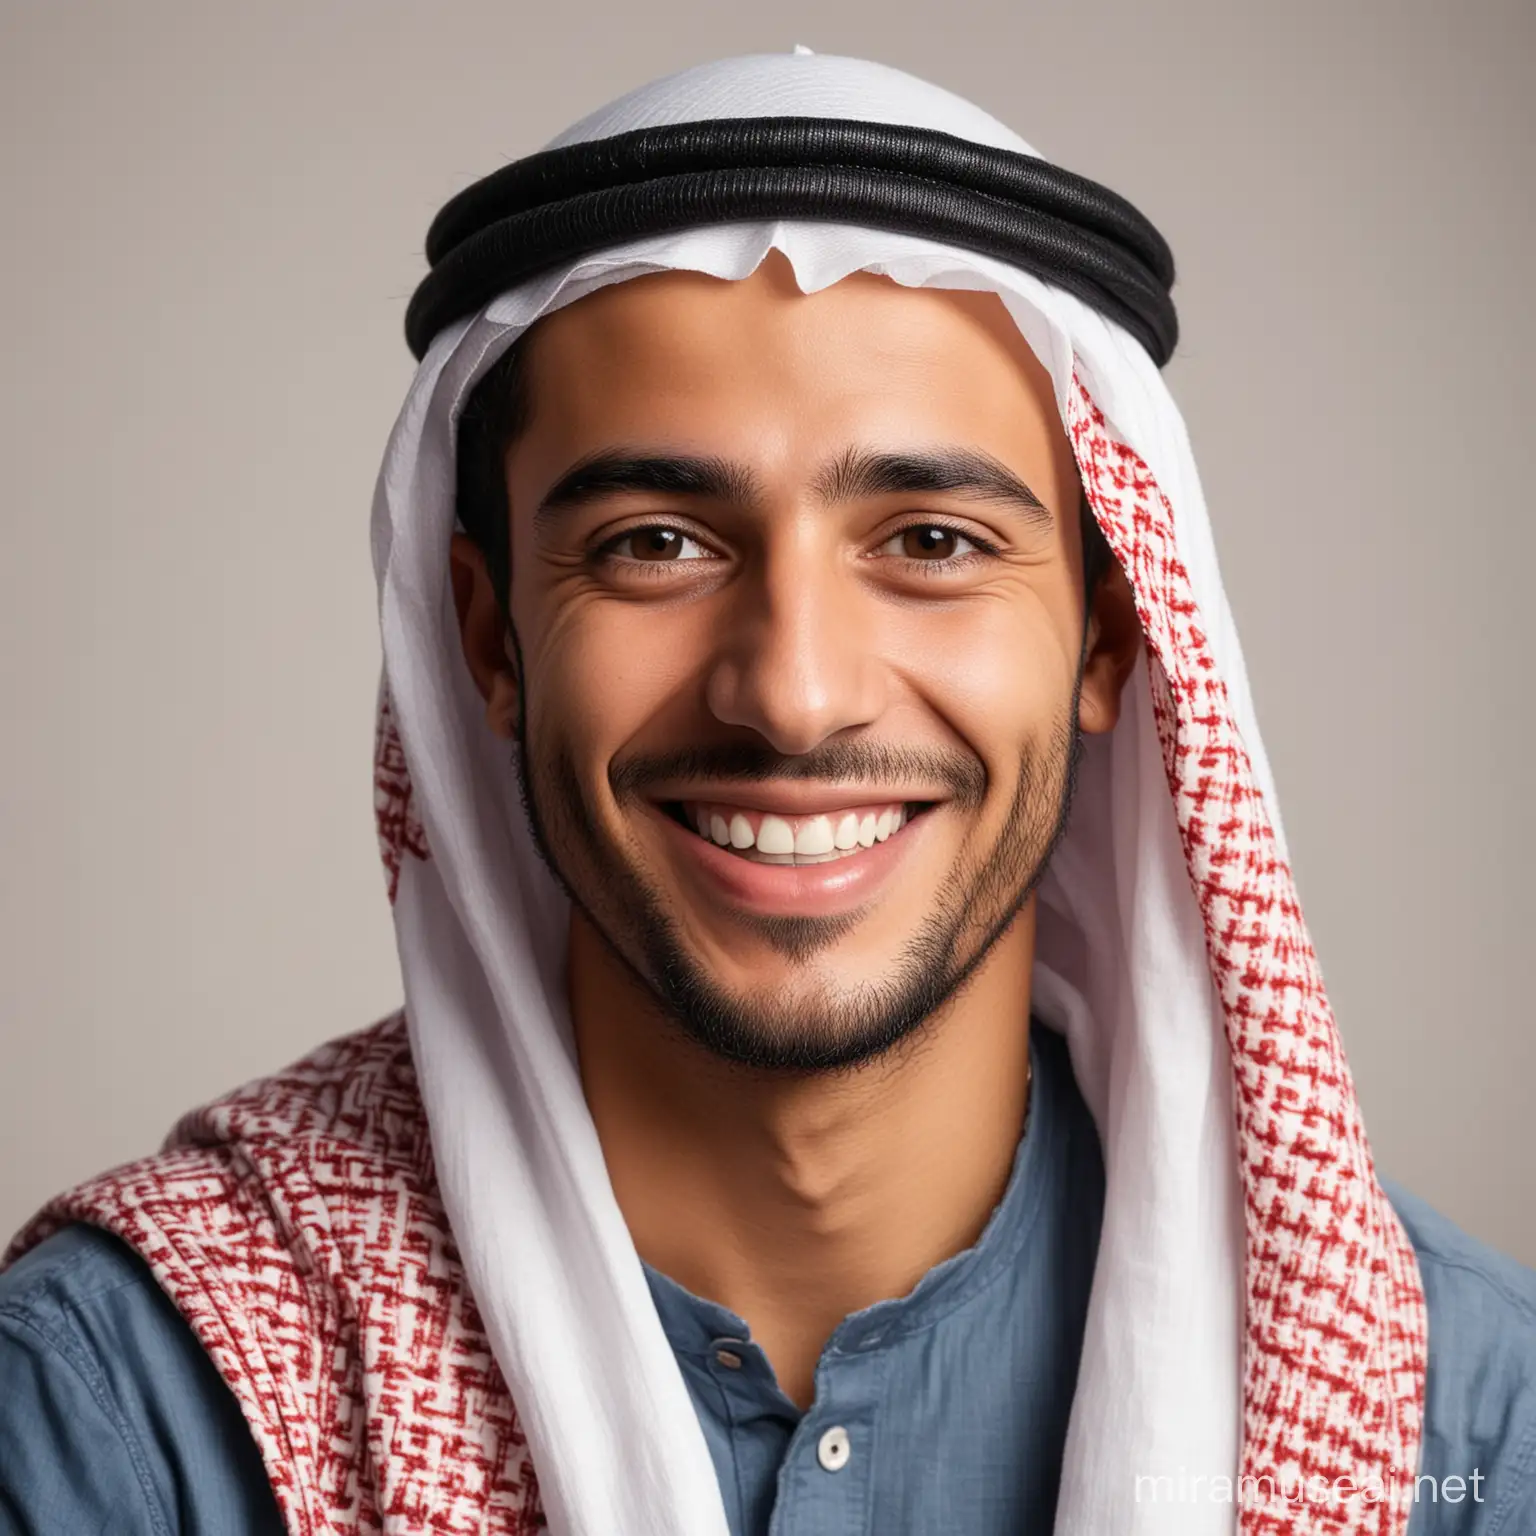 Joyful Middle Eastern Man Portrait